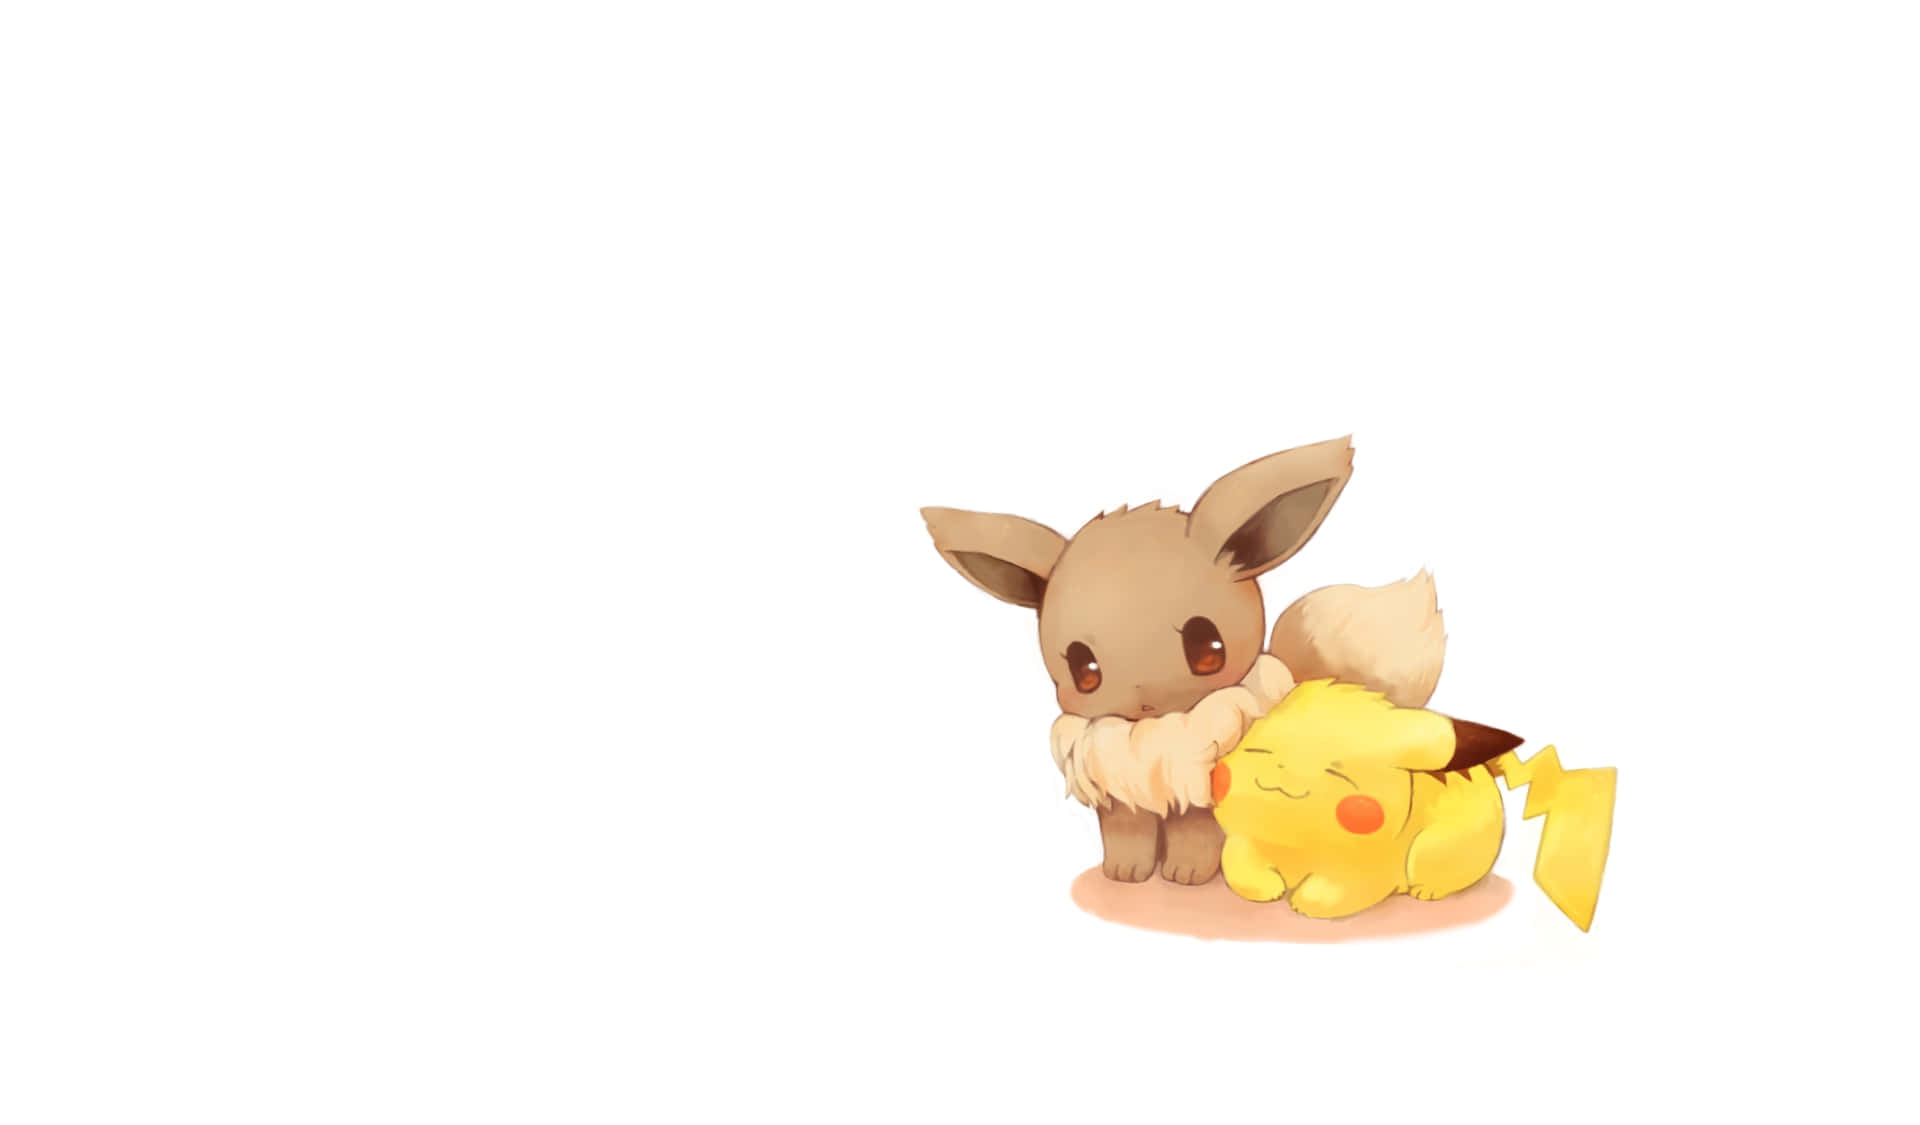 Eevee: Hãy truy cập để xem Ảnh dễ thương về Eevee, nhân vật Pokémon vô cùng đáng yêu và quen thuộc!